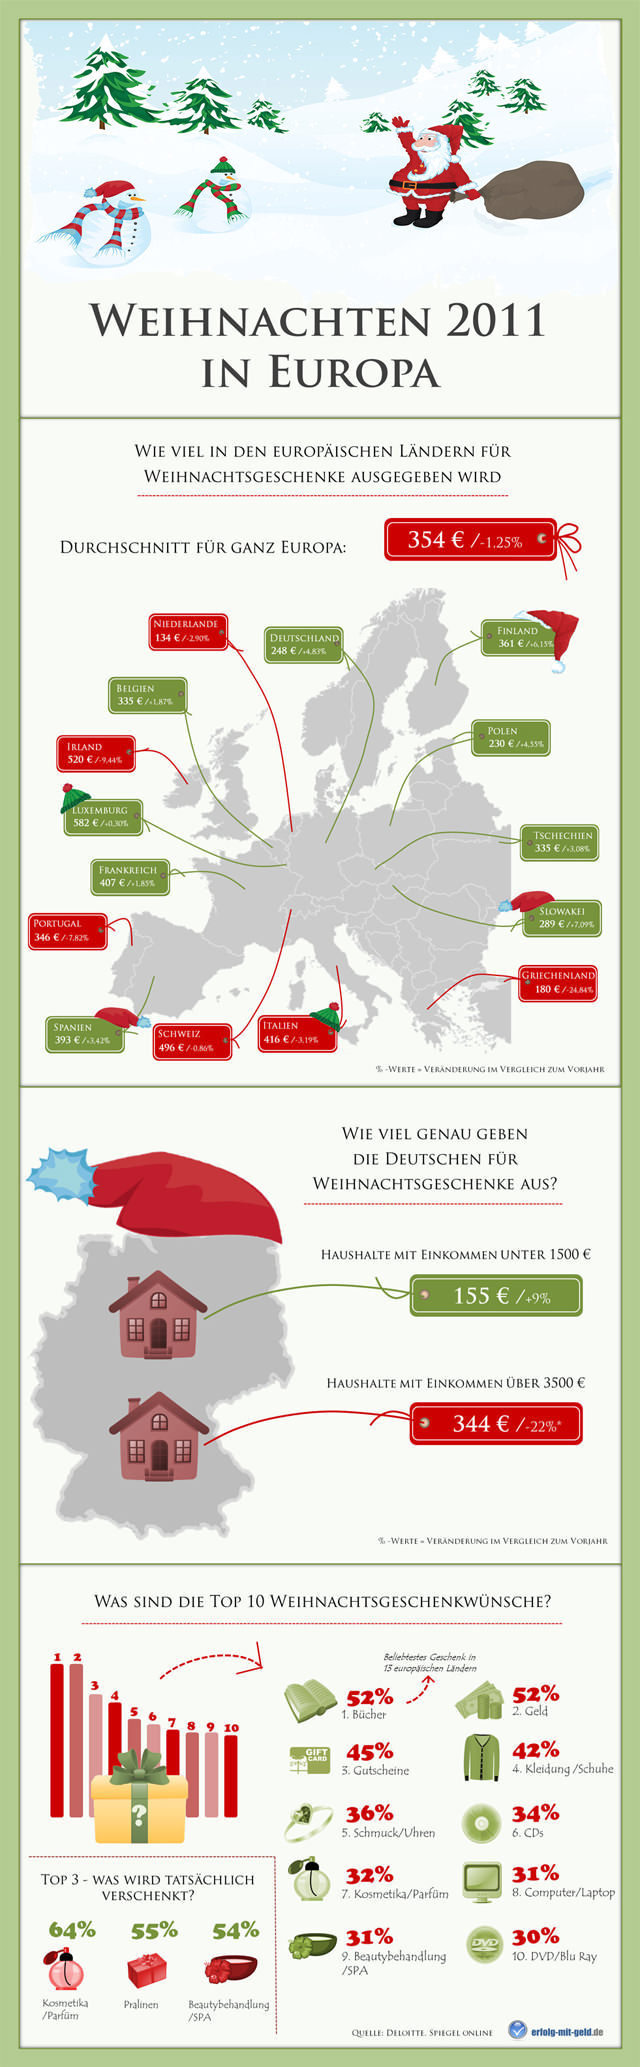 Diese Infografiken zeigt wer in Europa wie viel für Geschenke ausgibt